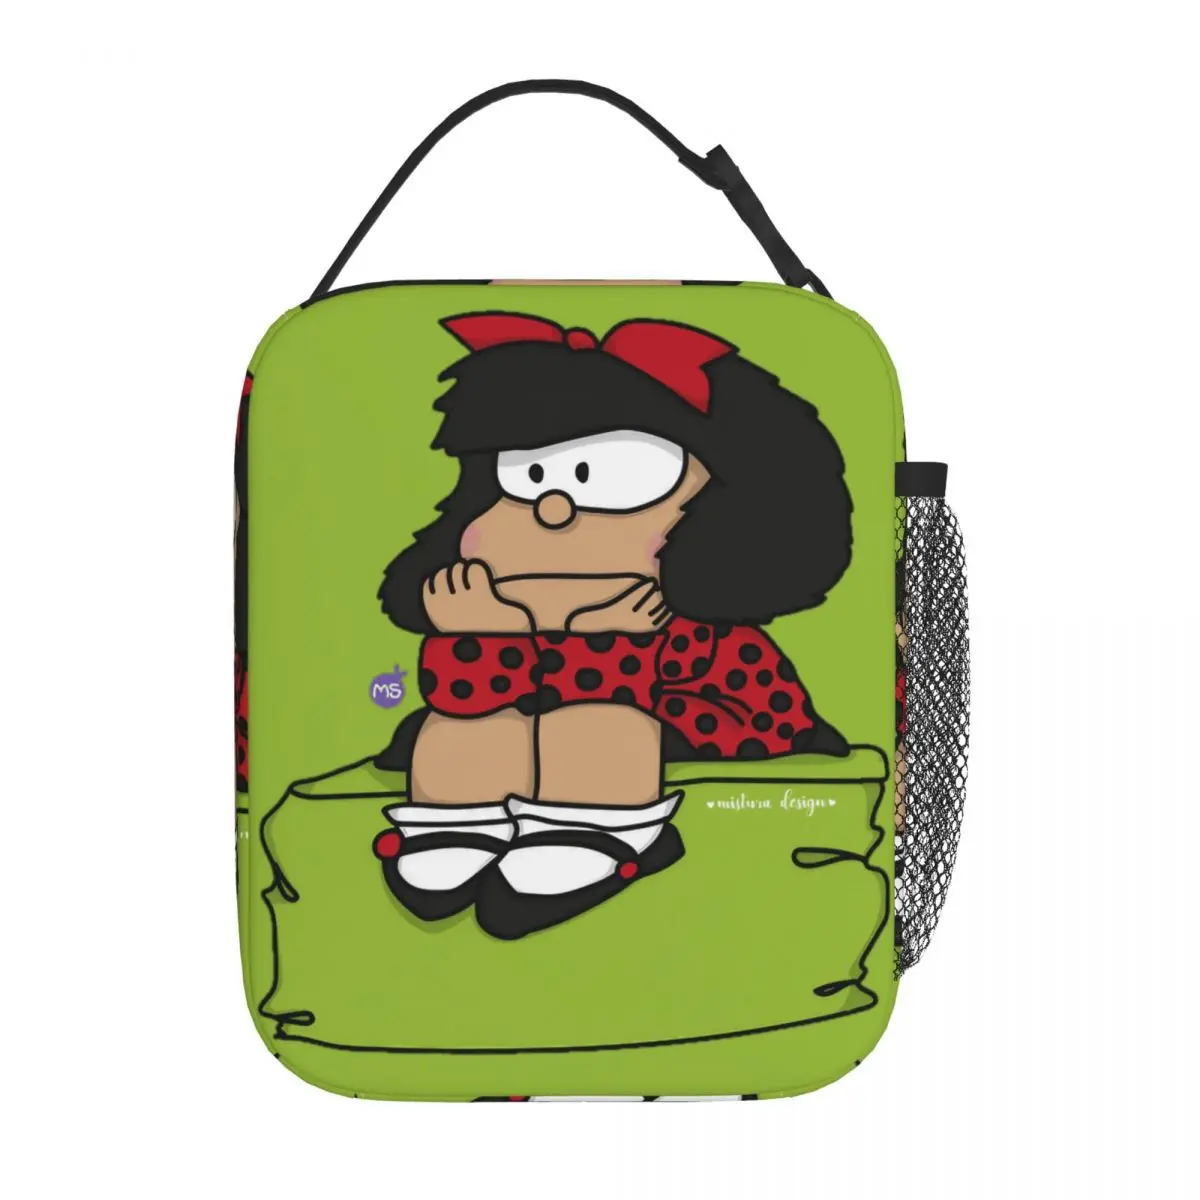  Симпатичная Mafalda Cartoon Термоизолированная сумка для ланча для школы Многоразовая сумка для еды Мужчины Женщины Термокулер Ланч-боксы - 0